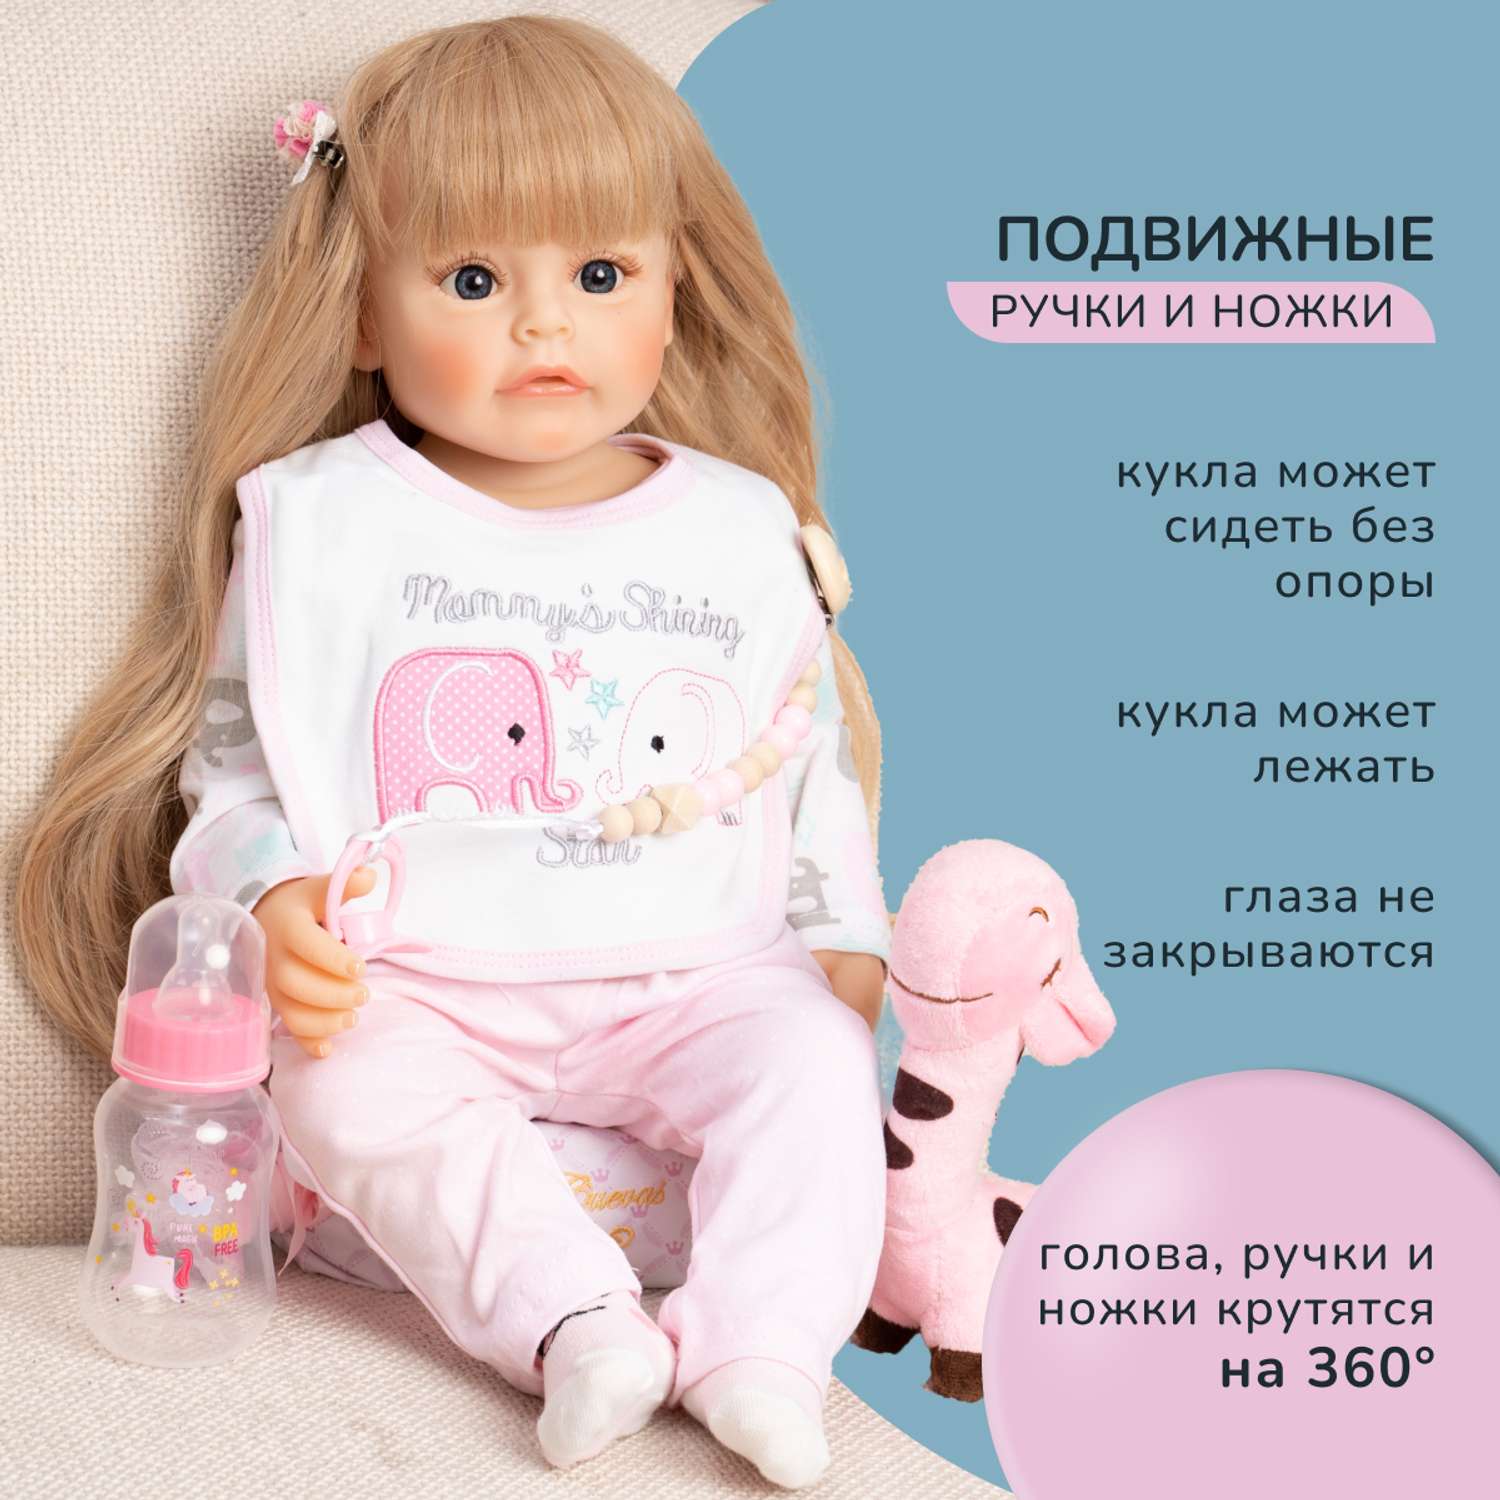 Кукла Реборн QA BABY Ева девочка большая пупс набор игрушки для девочки 55 см 5506 - фото 5